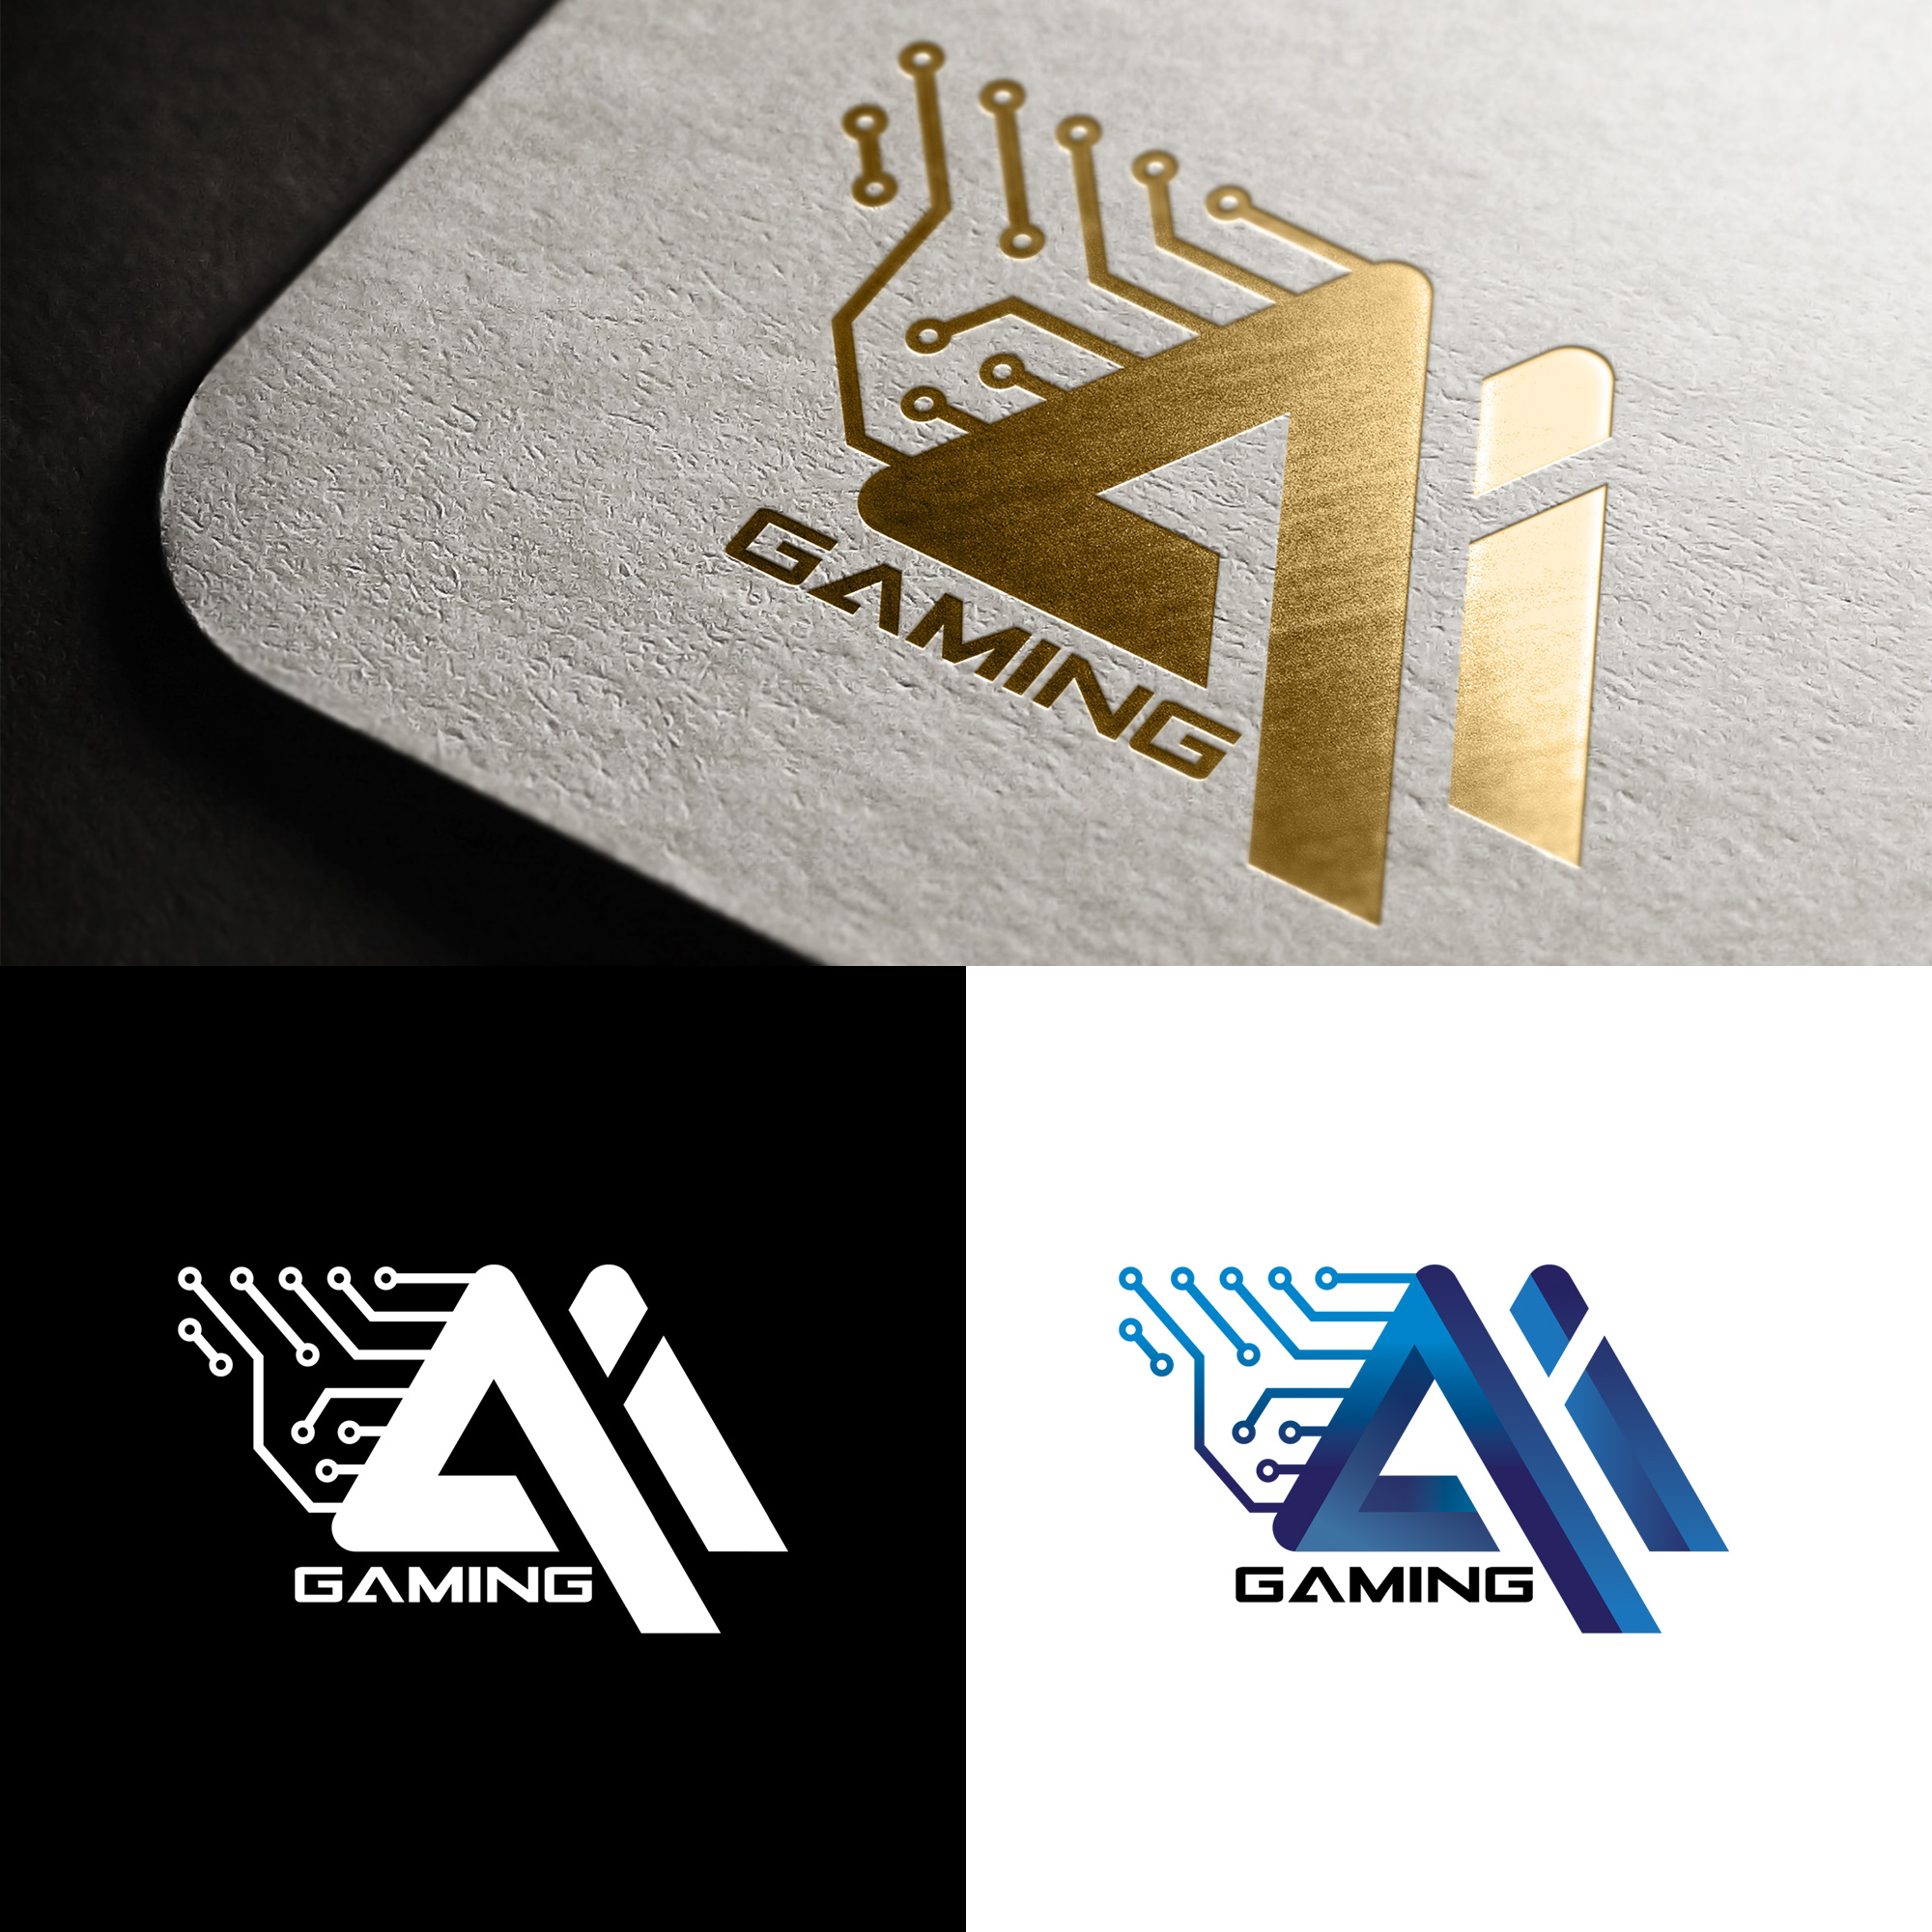  AI Gaming logo 